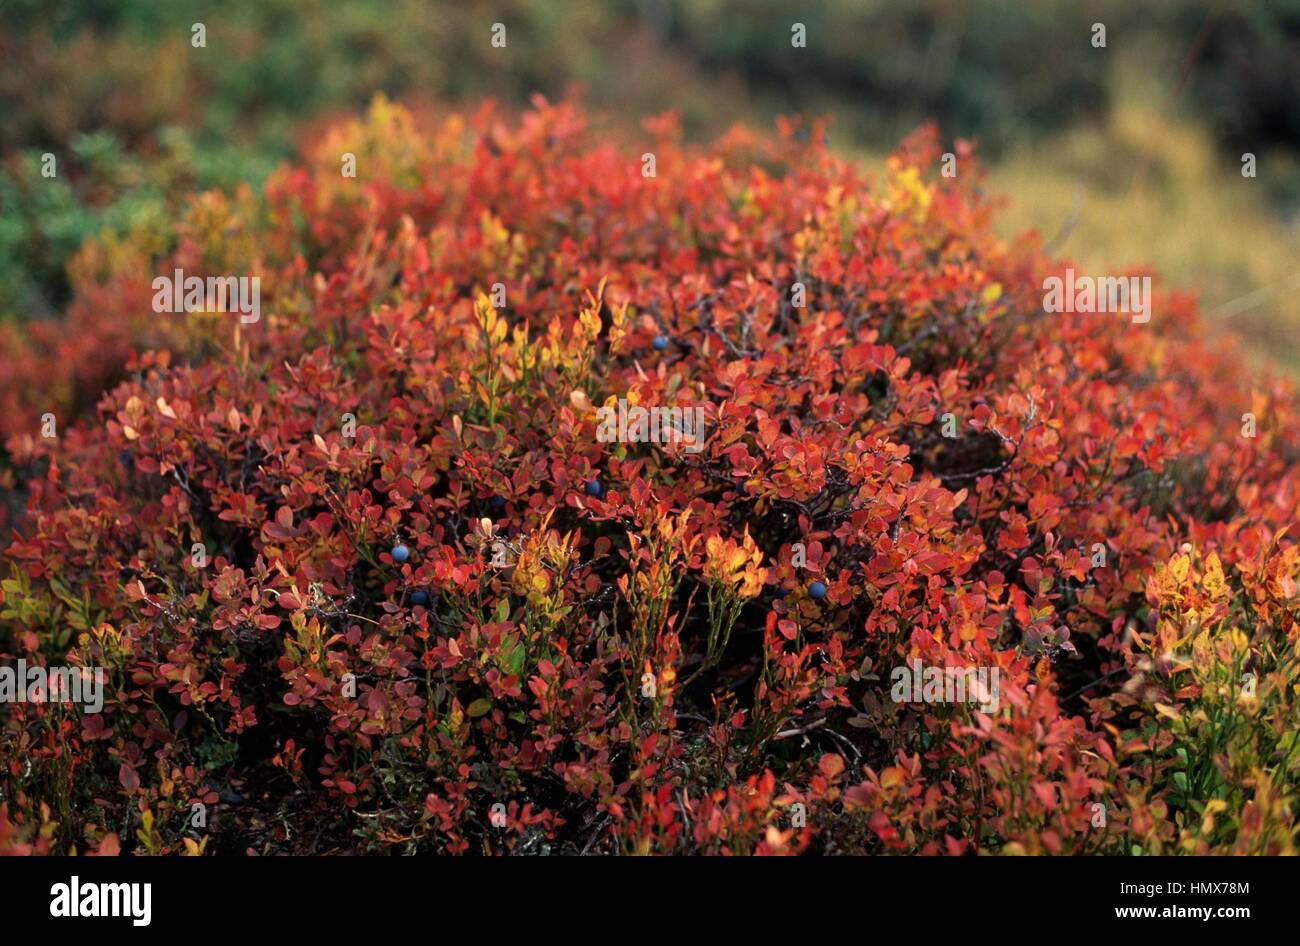 Blueberries (Vaccinium sp), Ericaceae, in the autumn, Trentino, Italy. Stock Photo